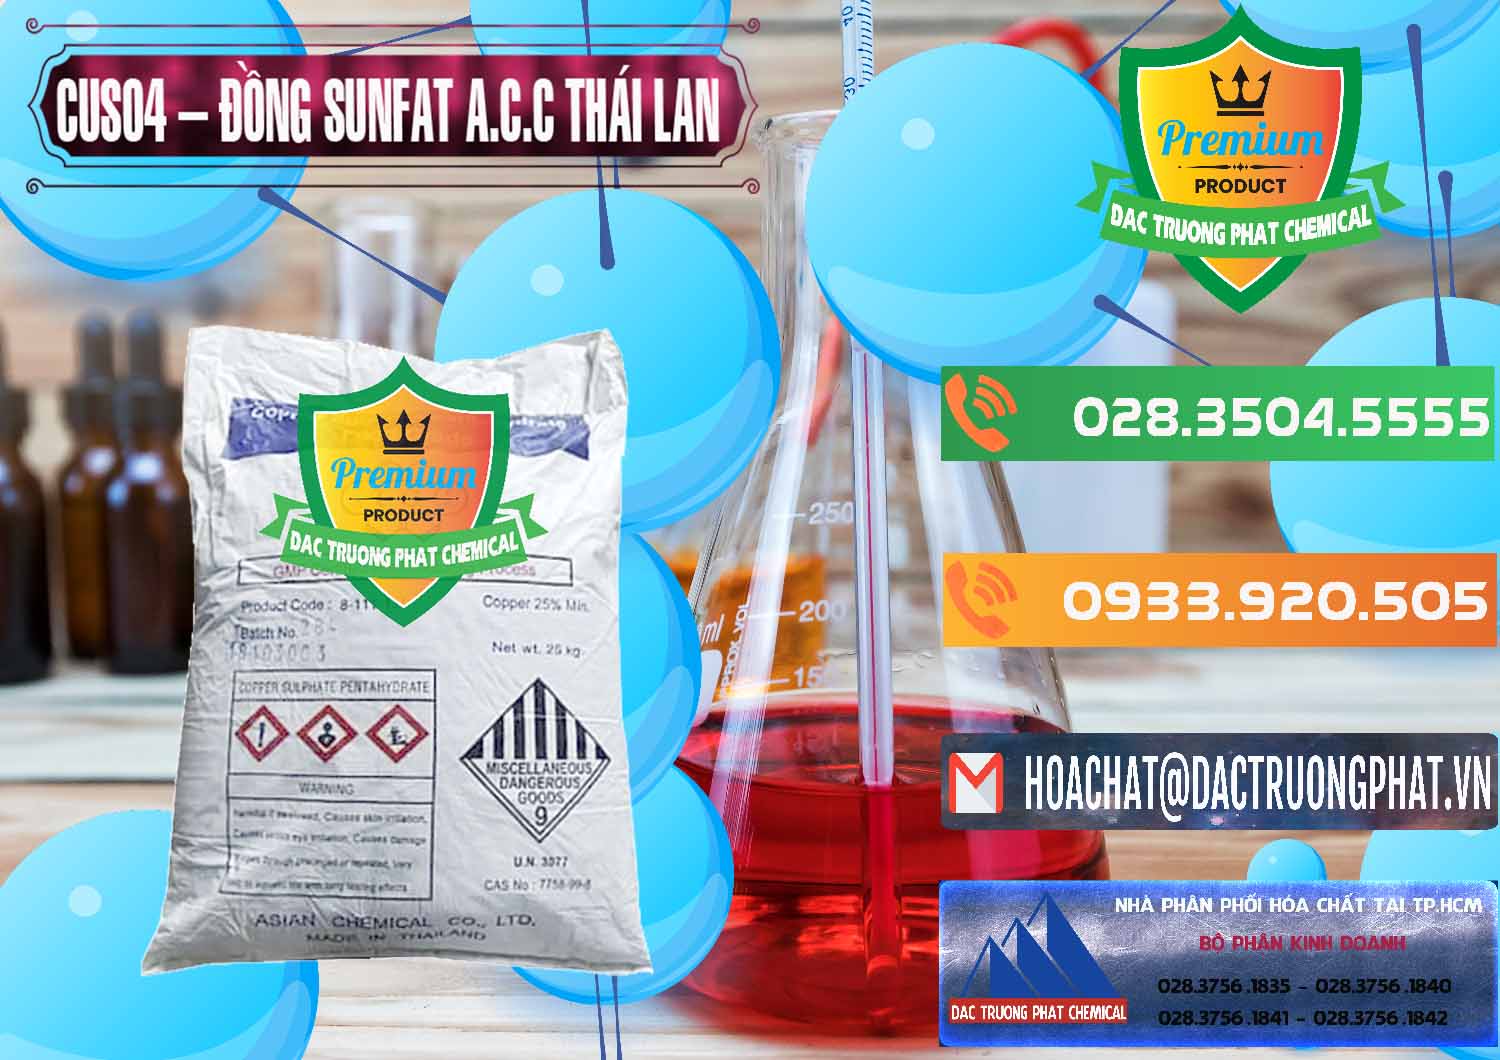 Cty chuyên bán _ cung ứng CuSO4 – Đồng Sunfat A.C.C Thái Lan - 0249 - Phân phối và cung ứng hóa chất tại TP.HCM - hoachatxulynuoc.com.vn